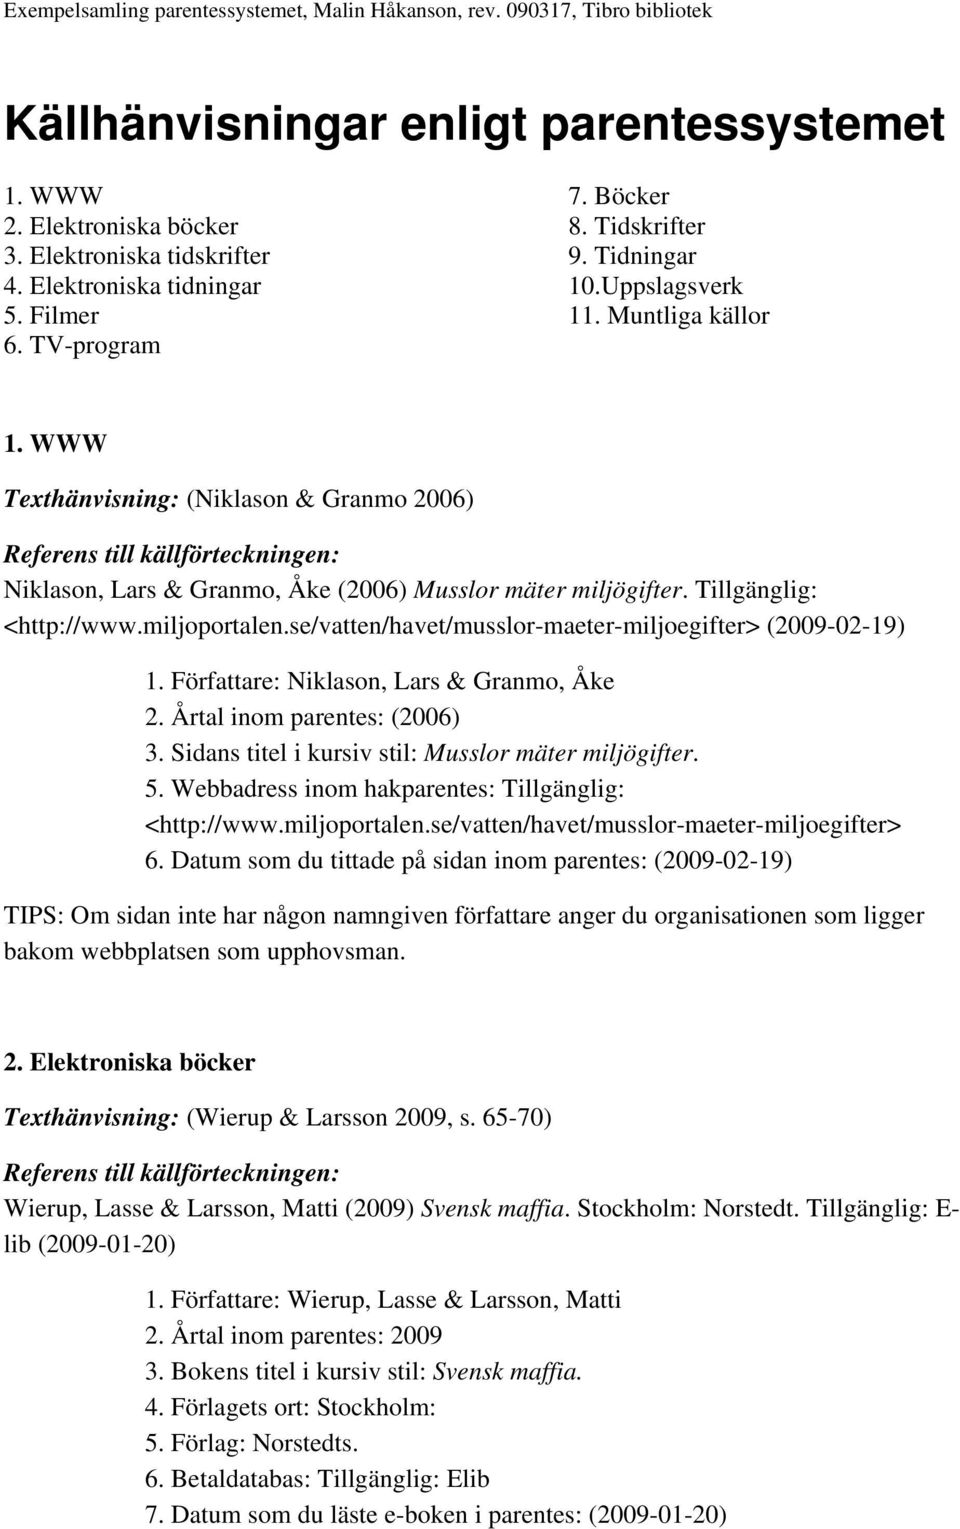 se/vatten/havet/musslor-maeter-miljoegifter> (2009-02-19) 1. Författare: Niklason, Lars & Granmo, Åke 2. Årtal inom parentes: (2006) 3. Sidans titel i kursiv stil: Musslor mäter miljögifter. 5.